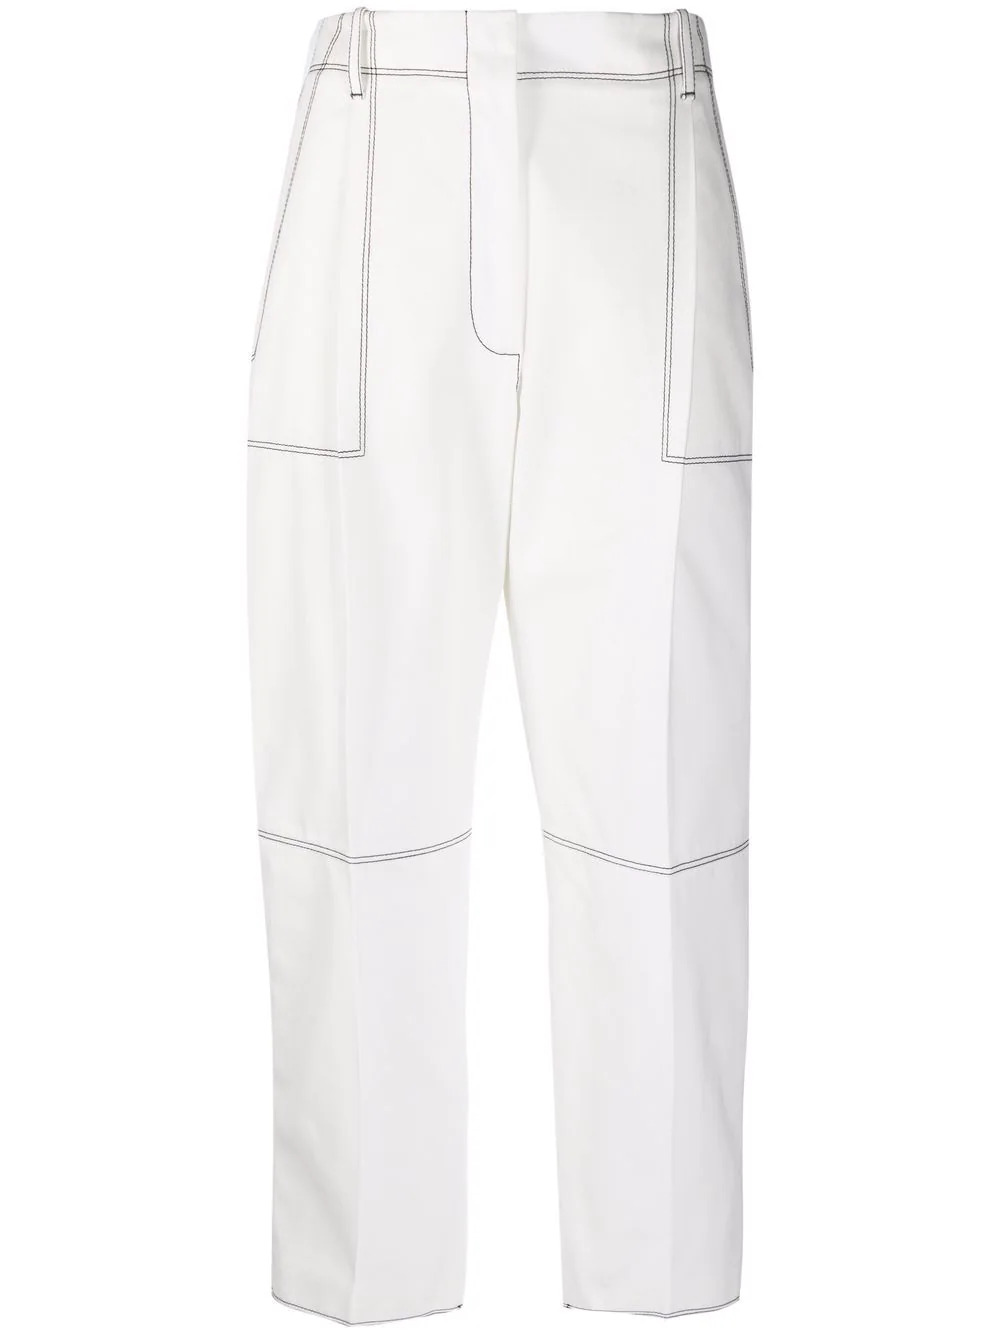 Culotte-Hose mit Kontrastnähten in Weiß